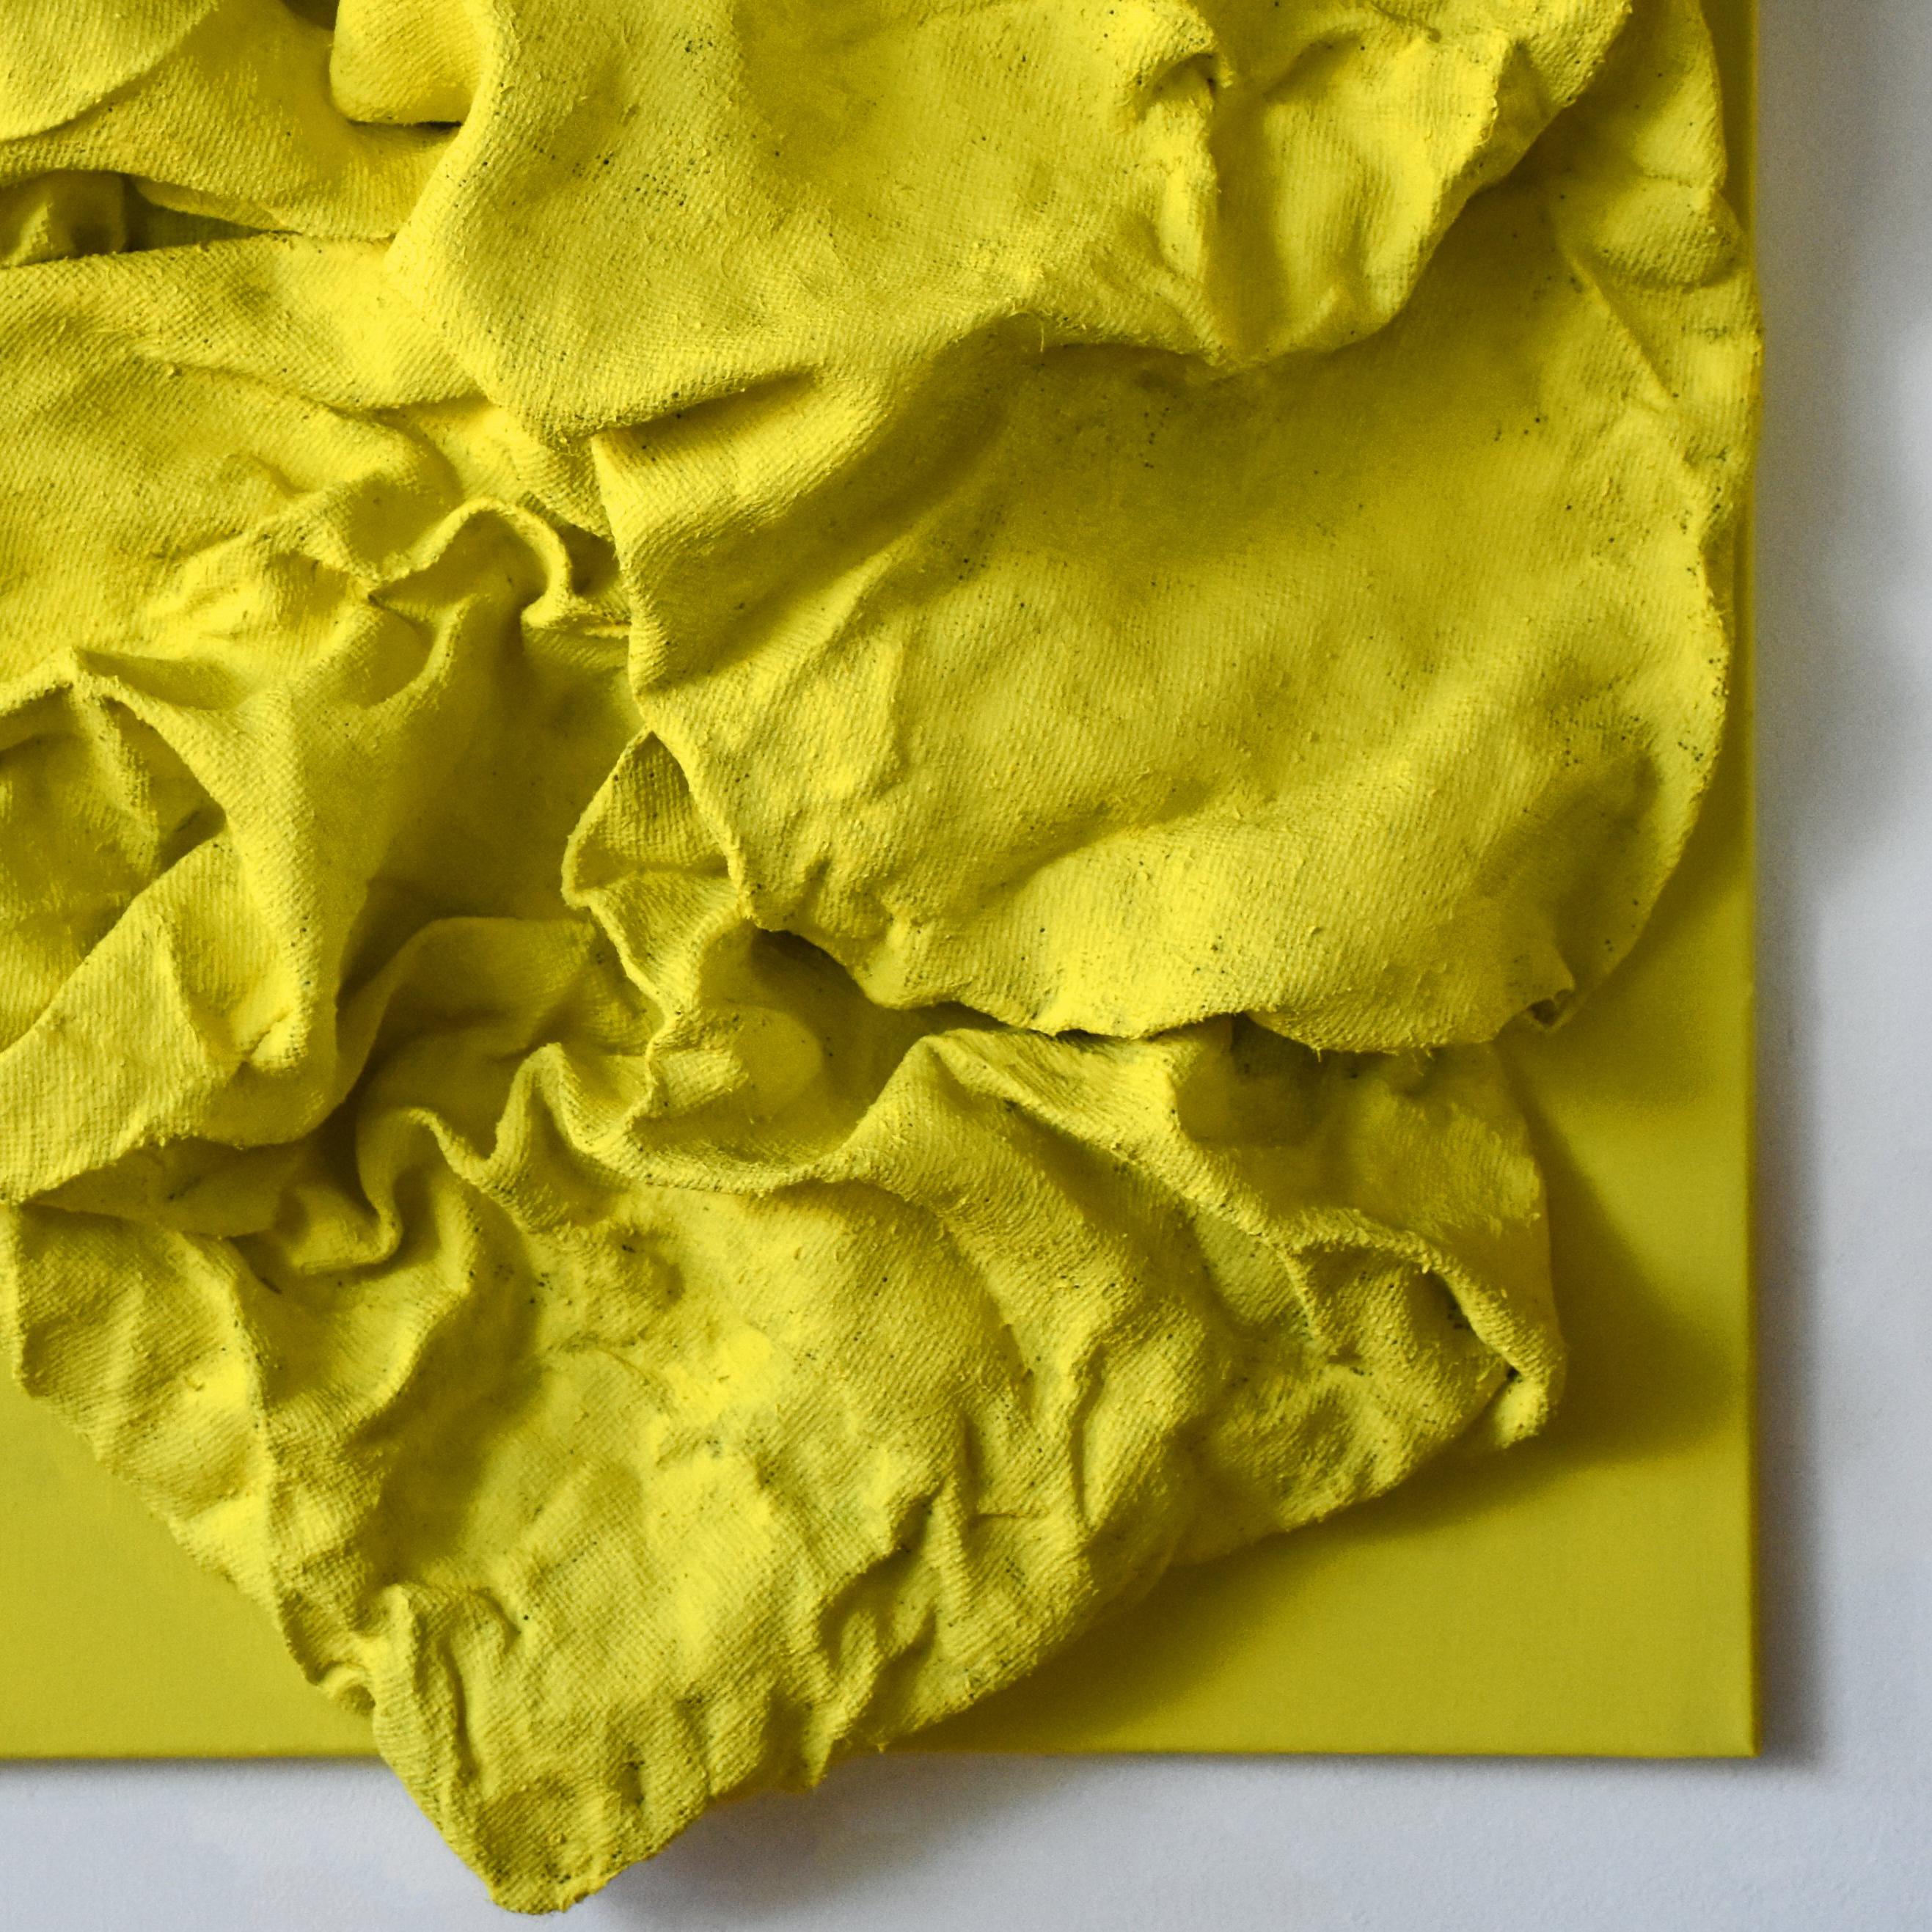 Lemon Yellow Folds (wall sculpture, hard fabric, textile sculpture, wall mount) - Green Abstract Sculpture by Chloe Hedden